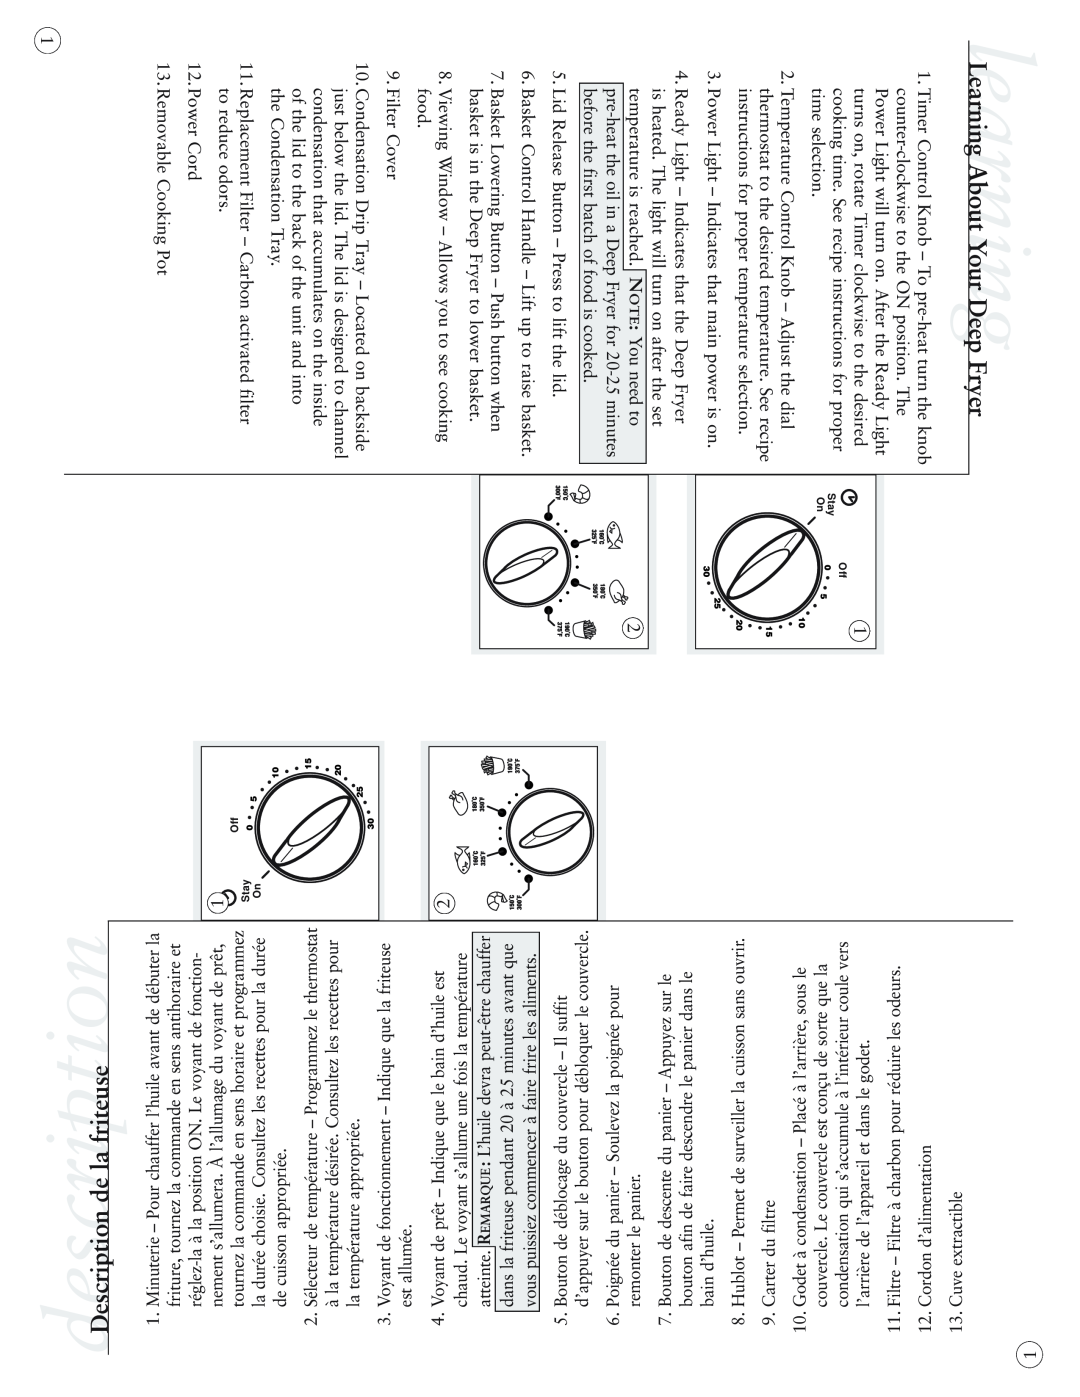 Sunbeam 3254-33, 3255-33 user manual Learning About YourlearningDeep Fryer, descriptionDescription de la friteuse 